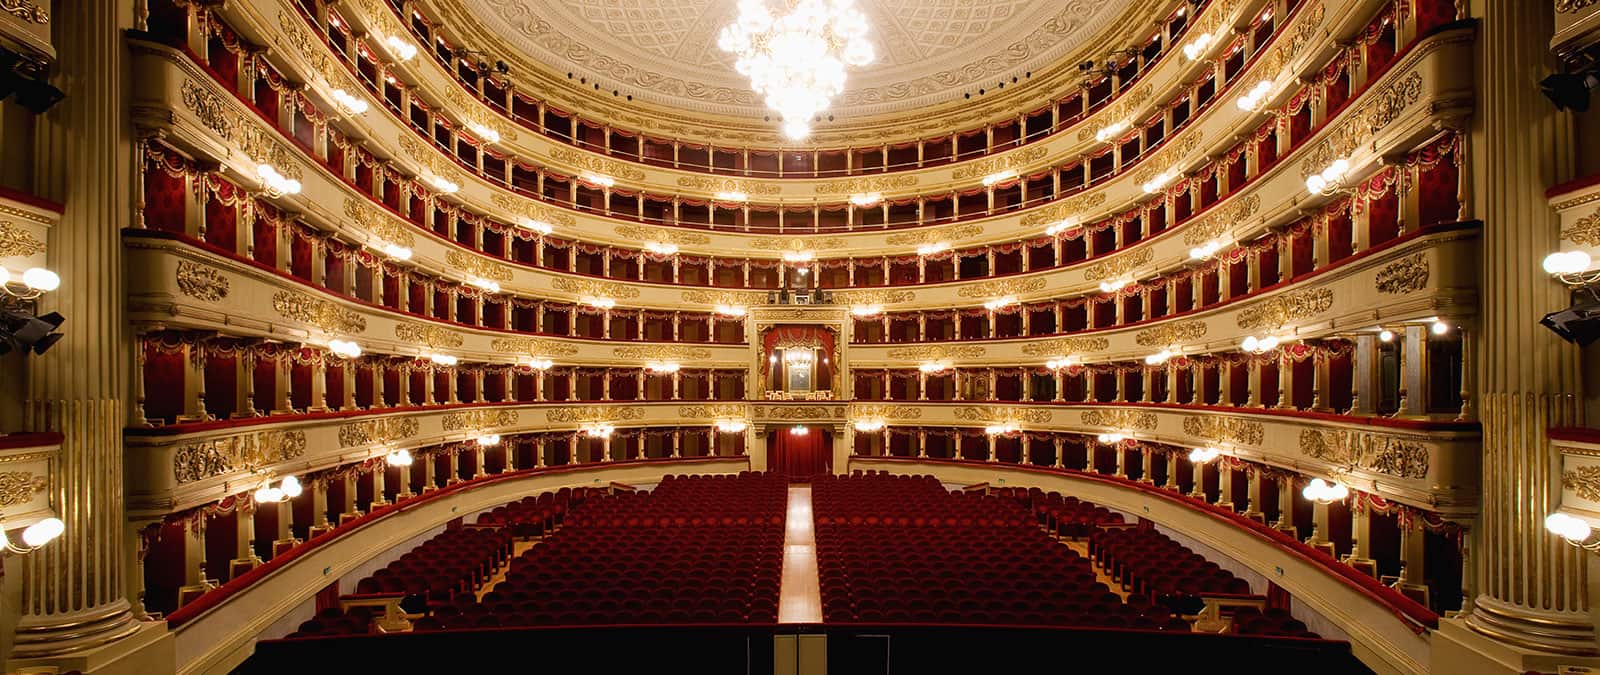 At Teatro alla Scala with IULM CUT